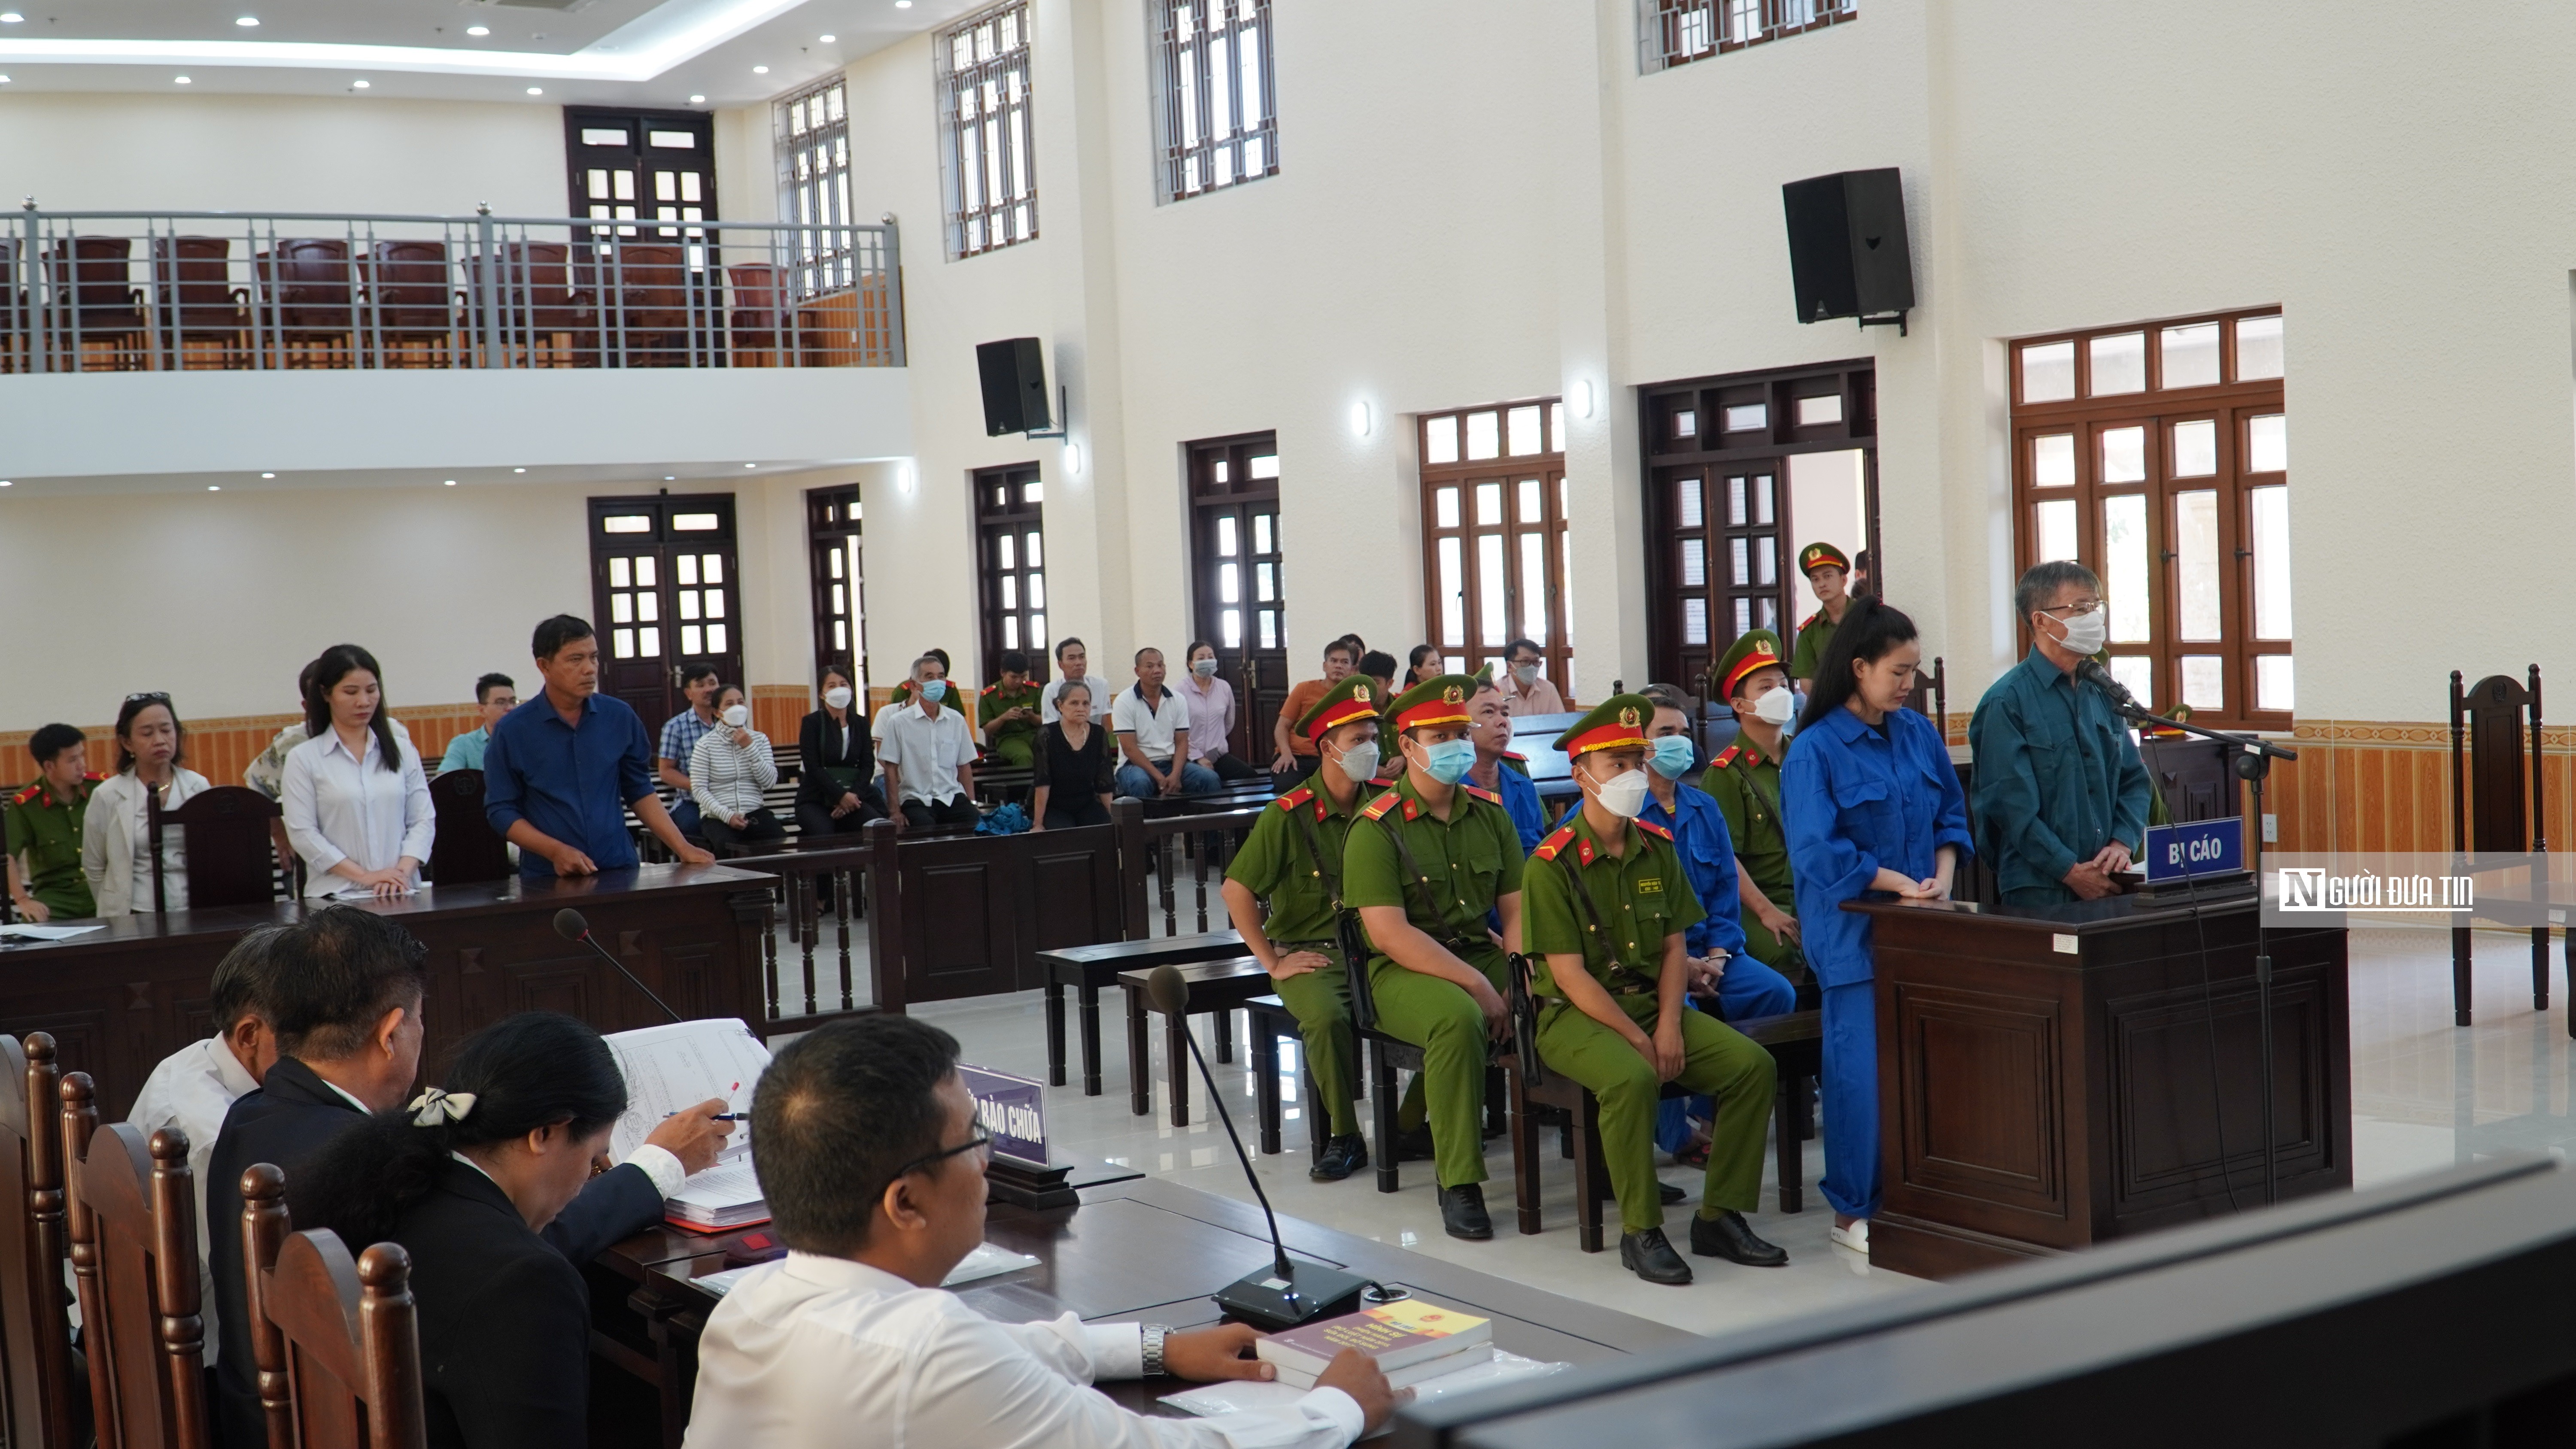 Hồ sơ điều tra - Bình Thuận: Lý do nguyên Trưởng văn phòng công chứng được giảm án 